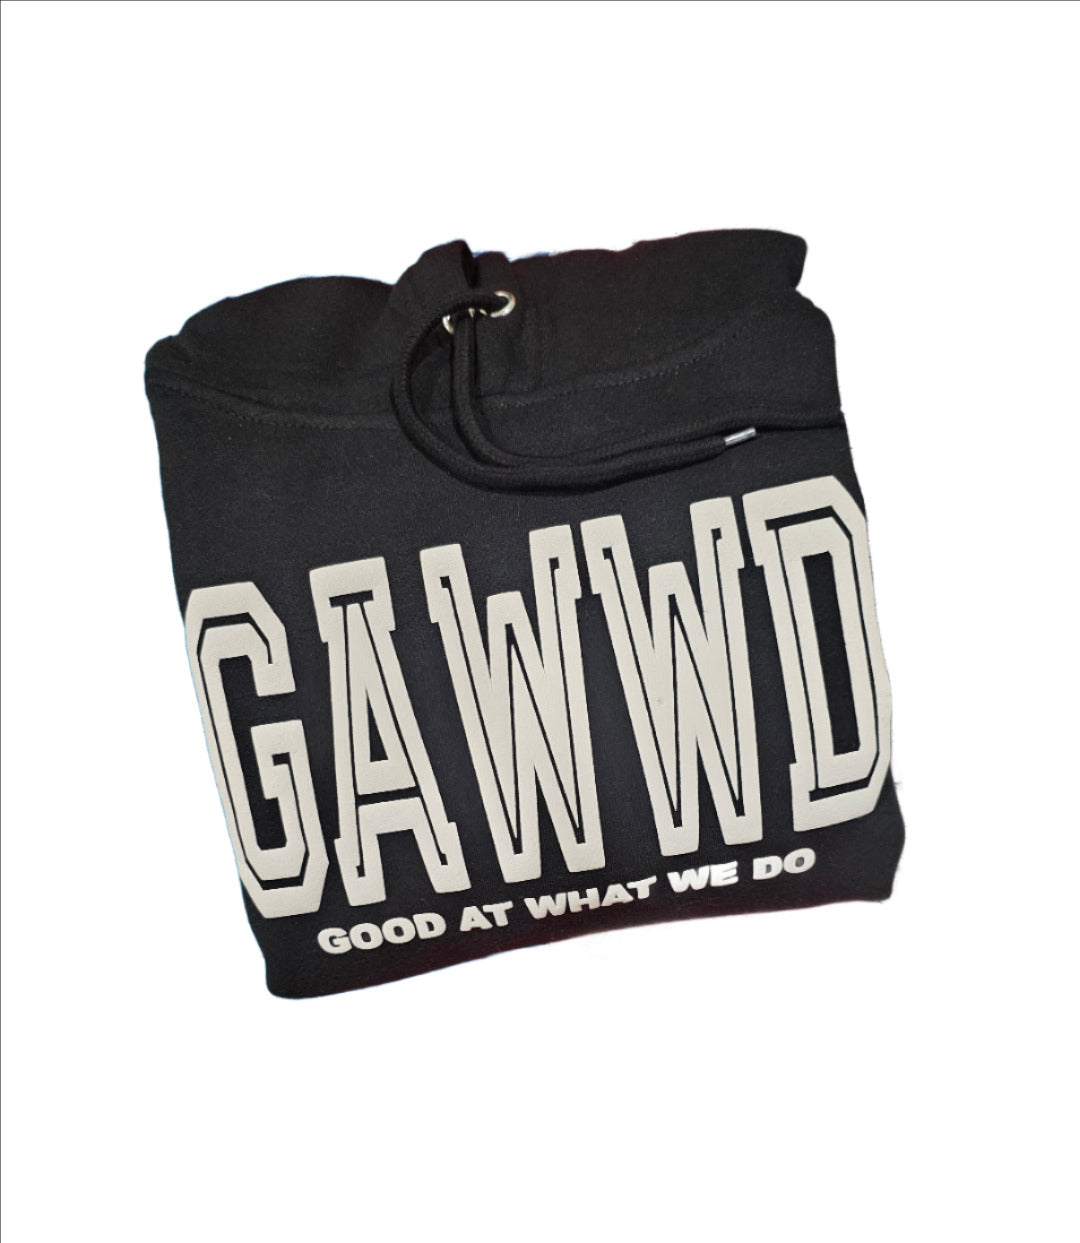 GAWWD Raised Logo Hoodie